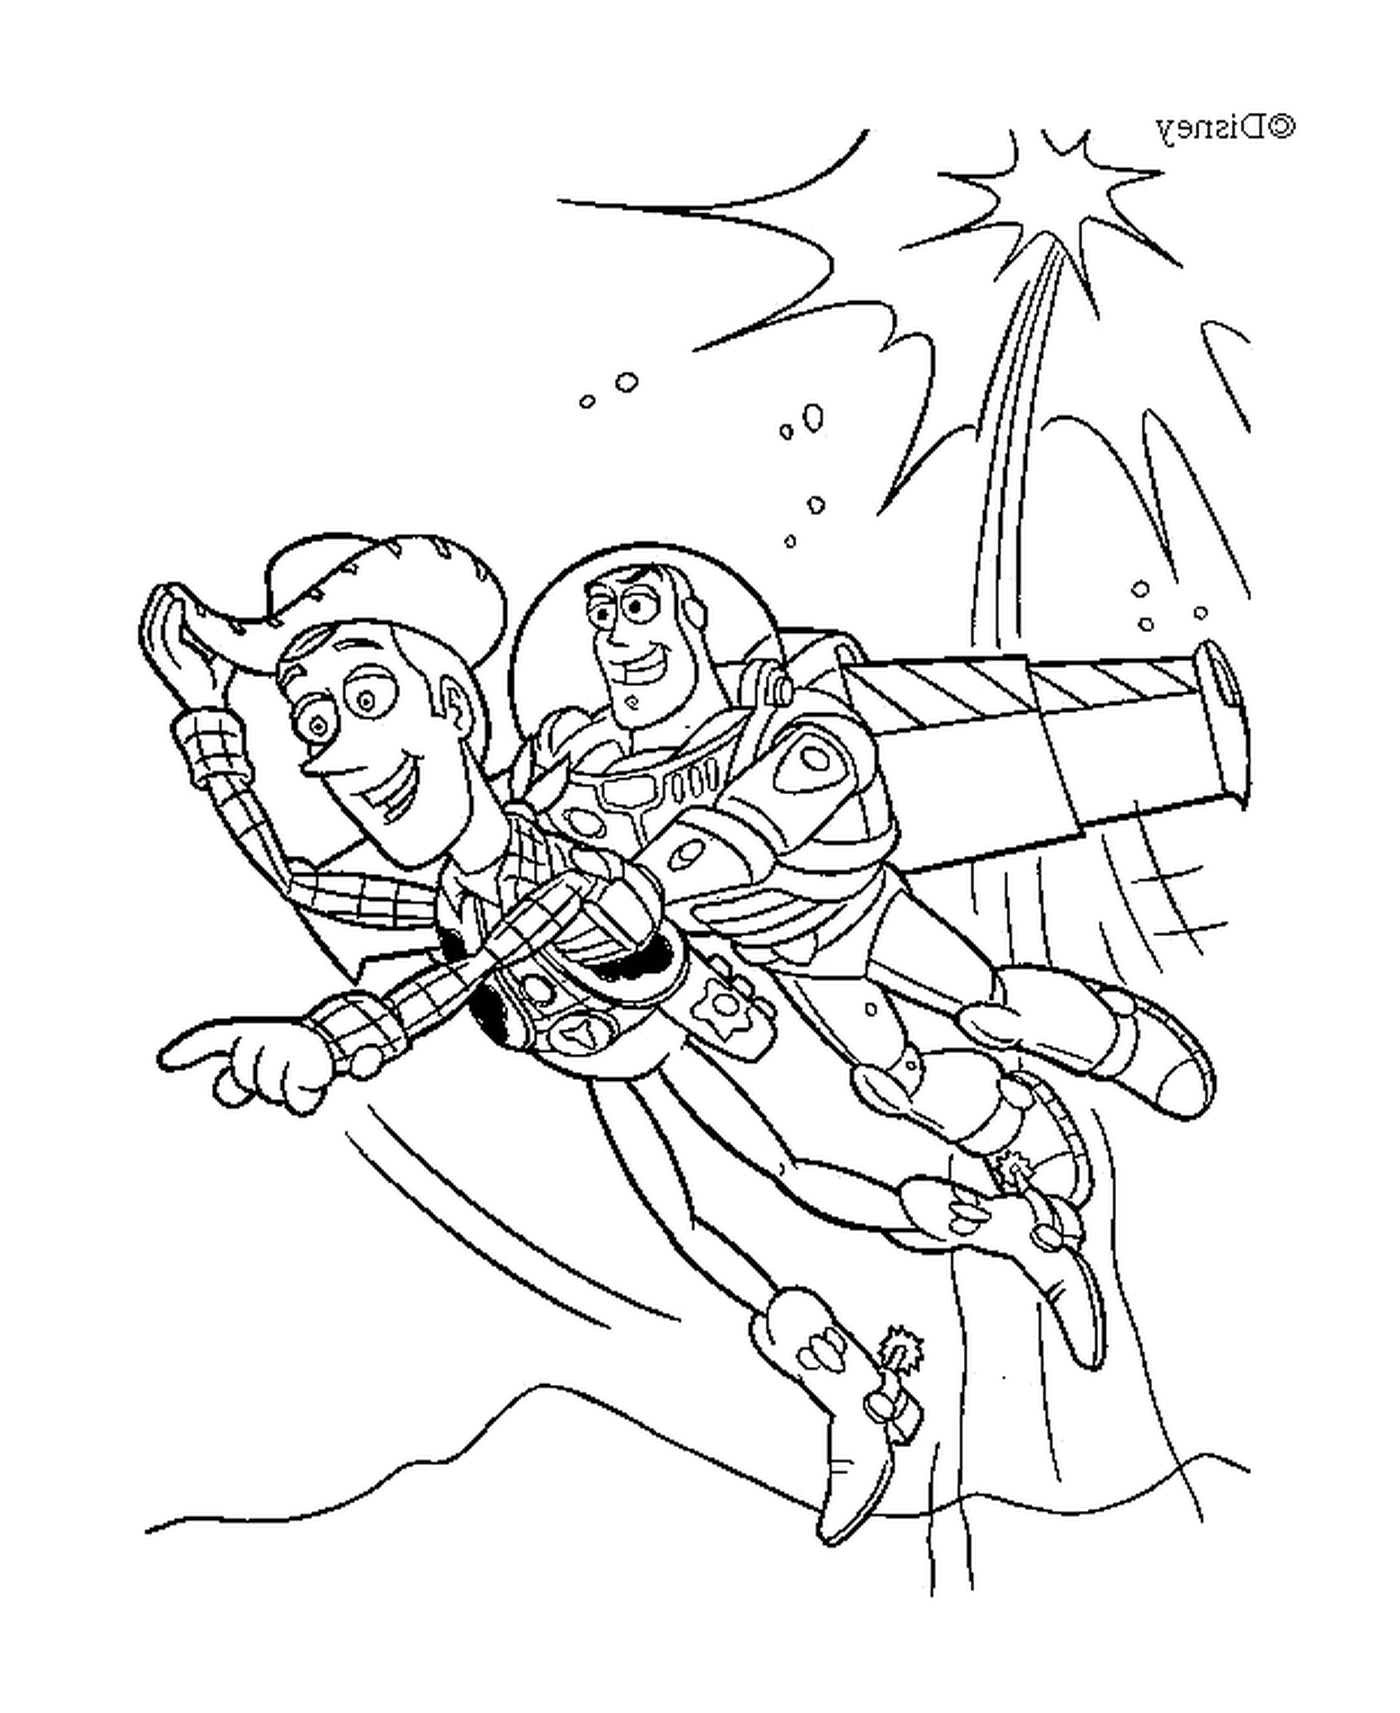  Buzz Light vola con Woody, eroico duo 